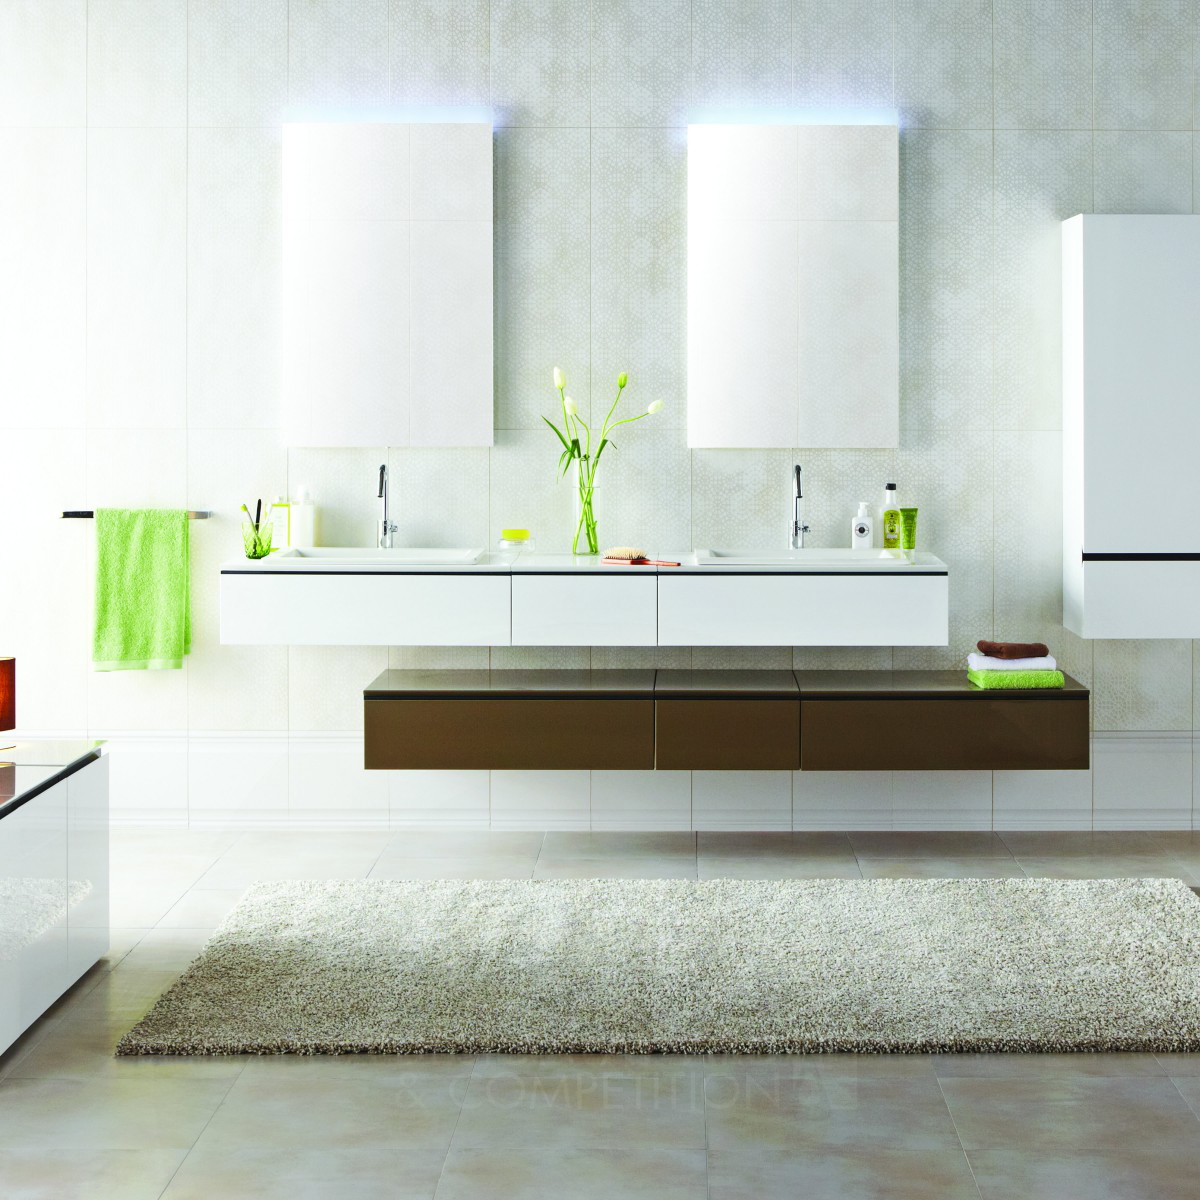 WHITE HOUSE Bathroom Furniture Set by K.i.d (Kale Design & Innovation)